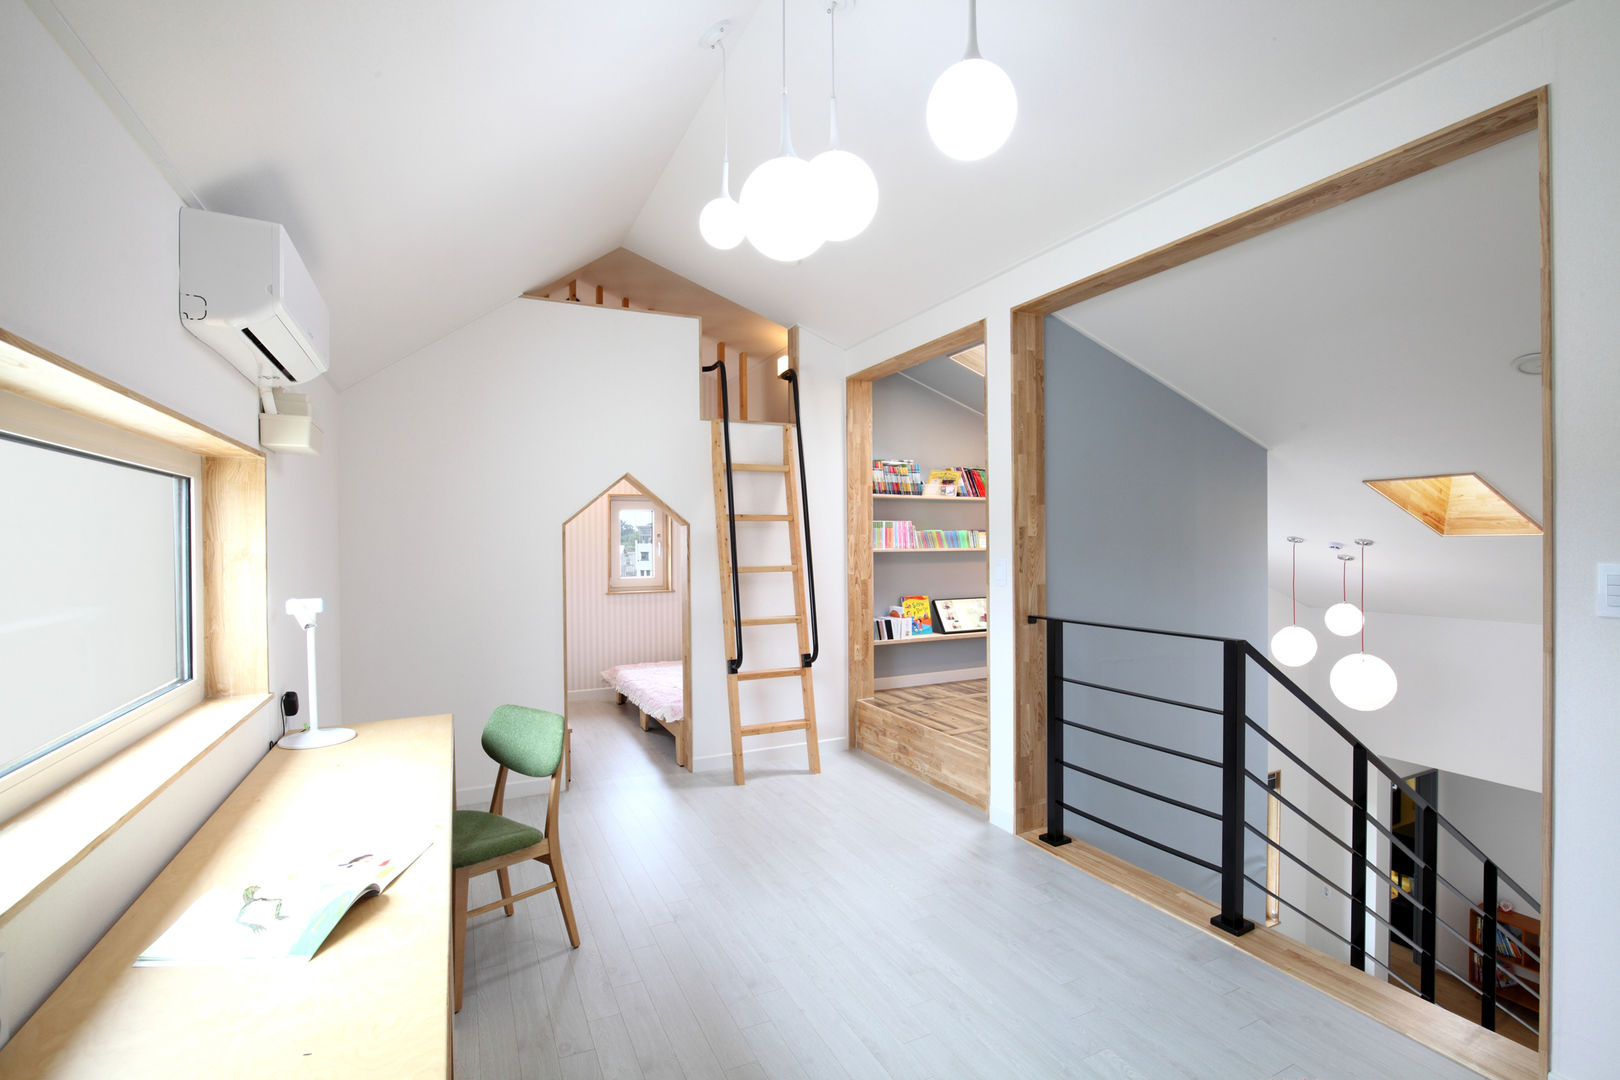 장성 - 세아이가 있는 하얀집, 주택설계전문 디자인그룹 홈스타일토토 주택설계전문 디자인그룹 홈스타일토토 モダンデザインの 子供部屋 合板（チップボード）